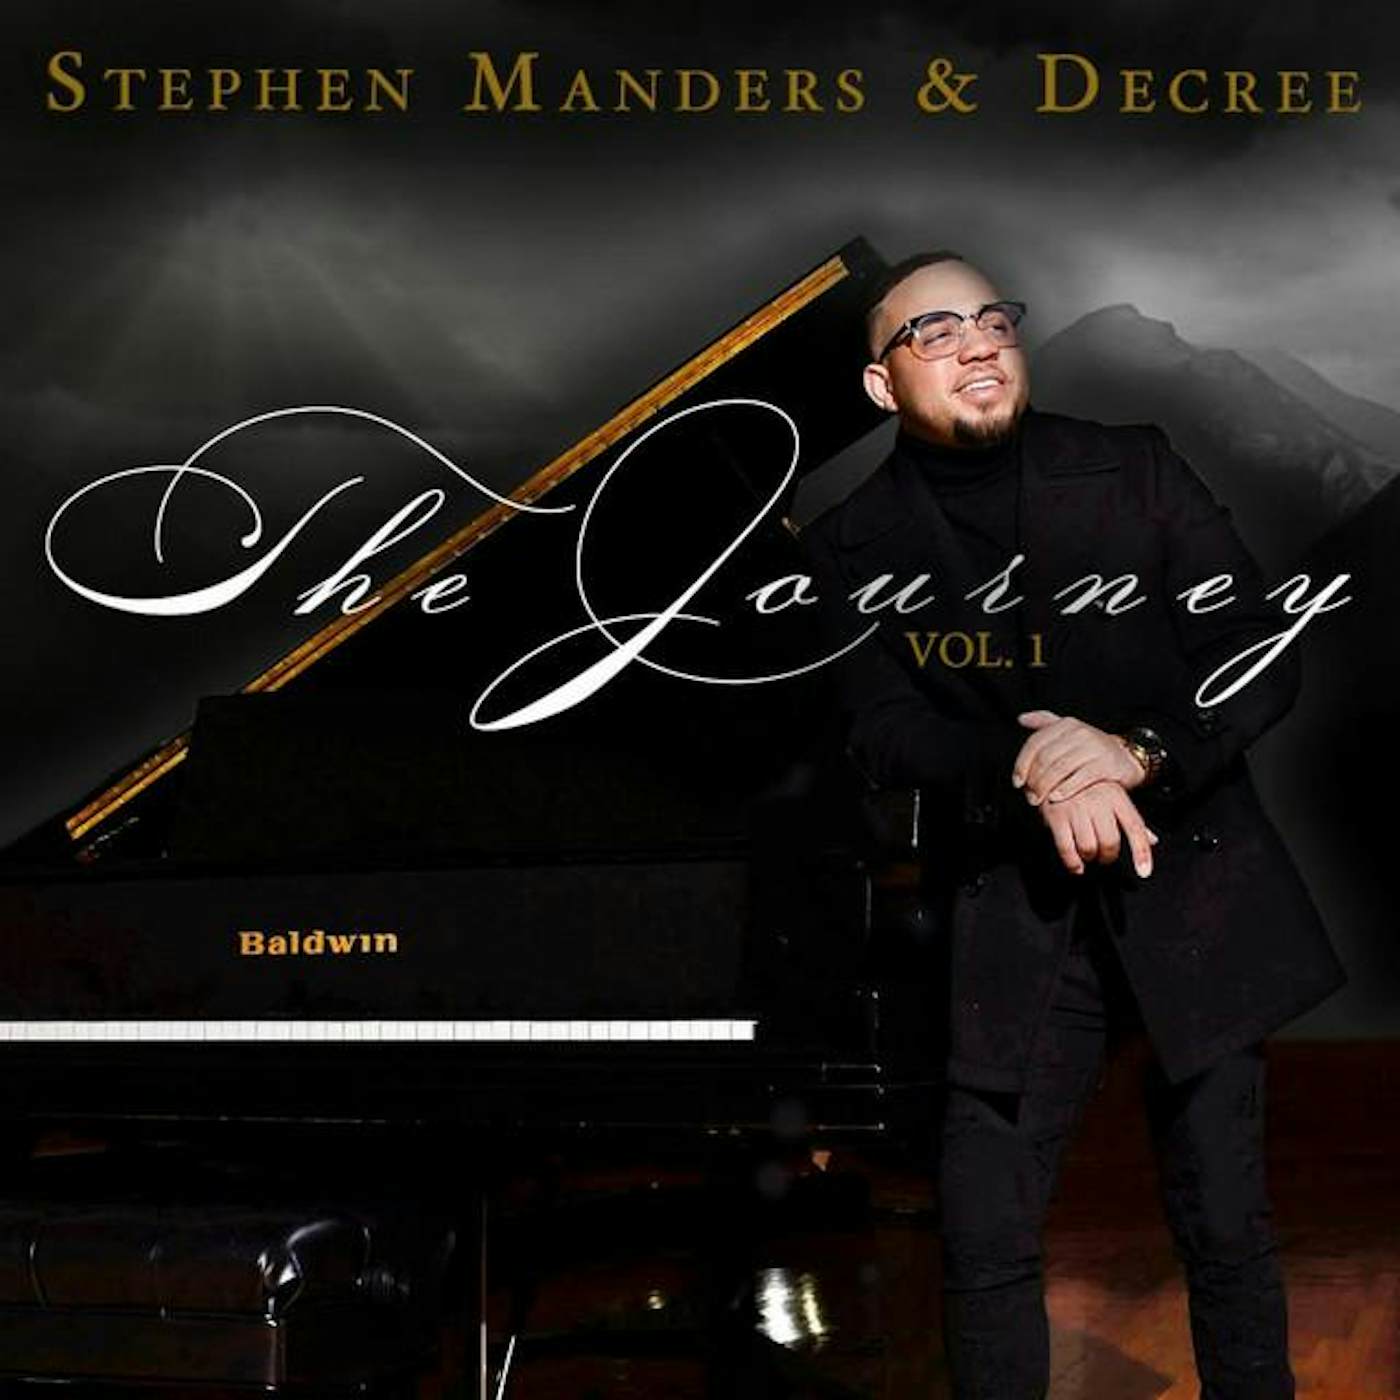 Stephen Manders & Decree